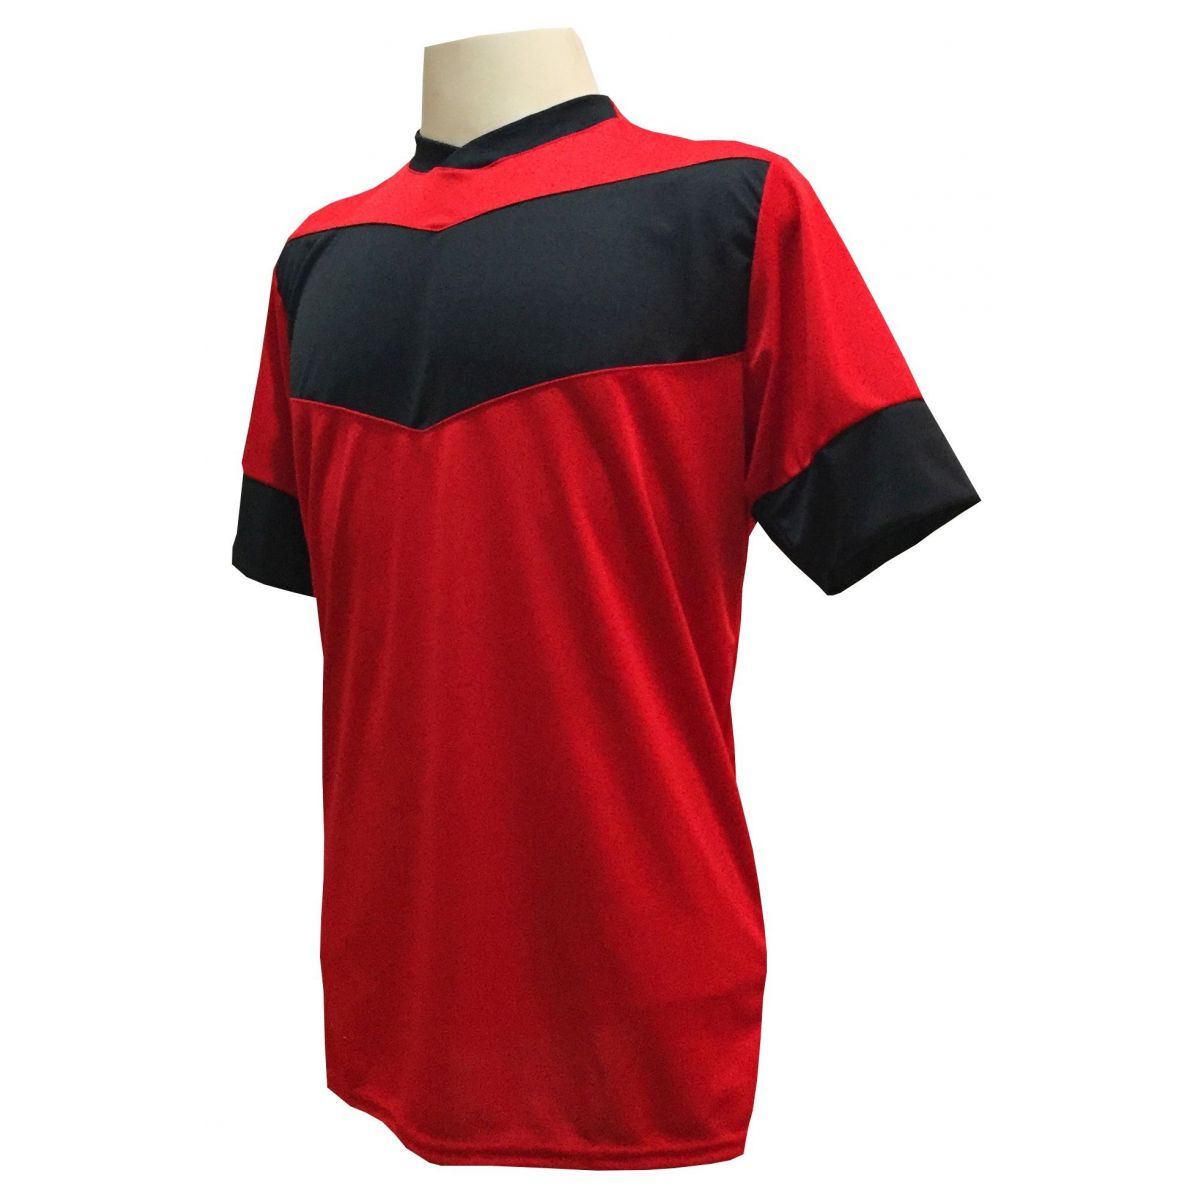 Uniforme Esportivo com 18 camisas modelo Columbus Vermelho/Preto + 18 calções modelo Madrid + 1 Goleiro + Brindes